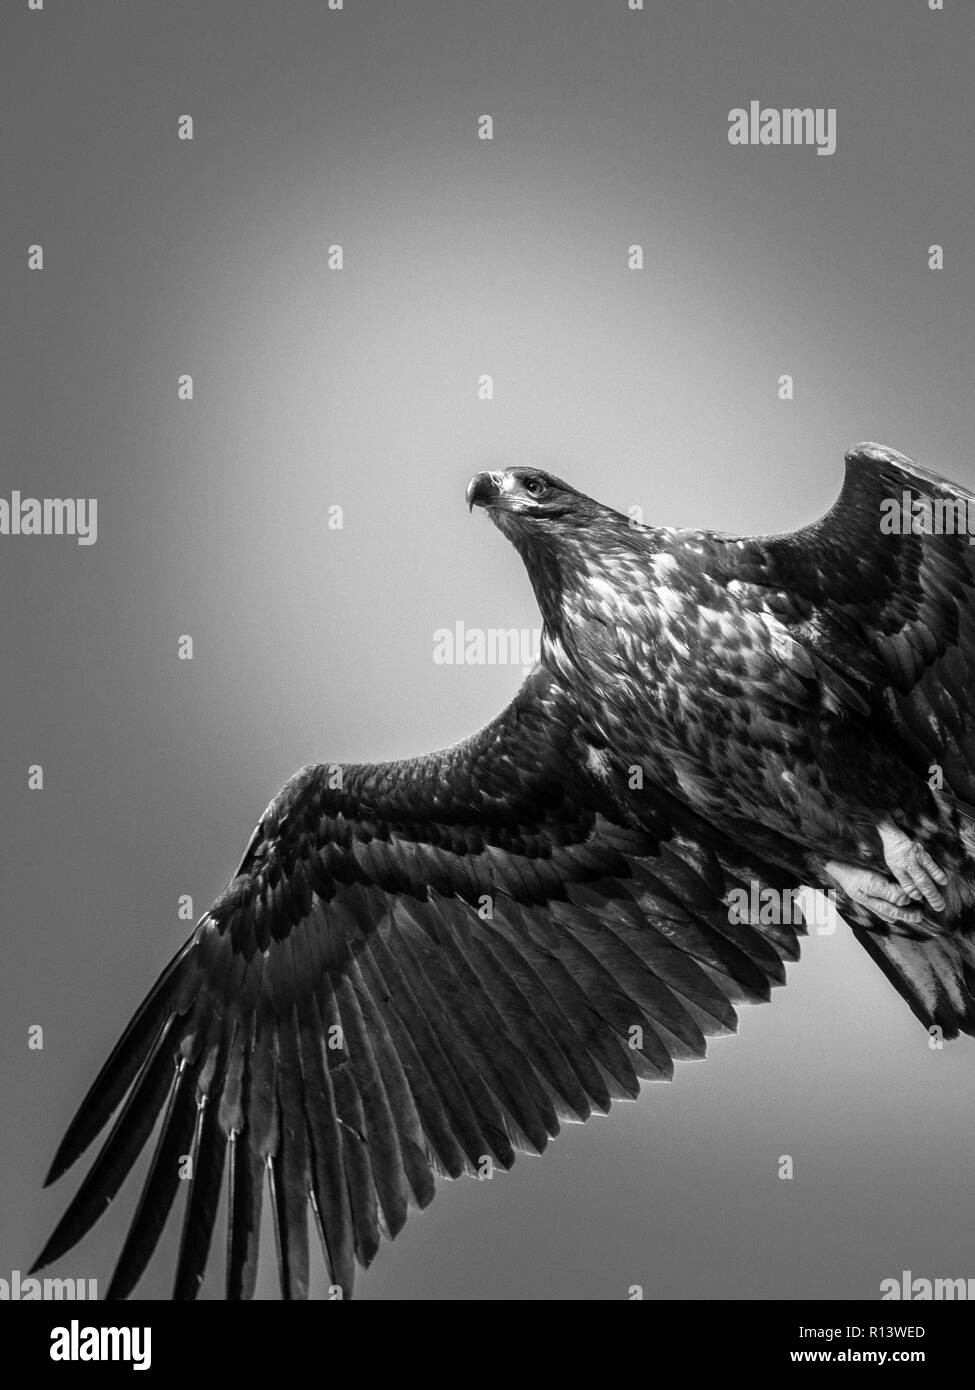 El águila de cola blanca en blanco y negro Foto de stock